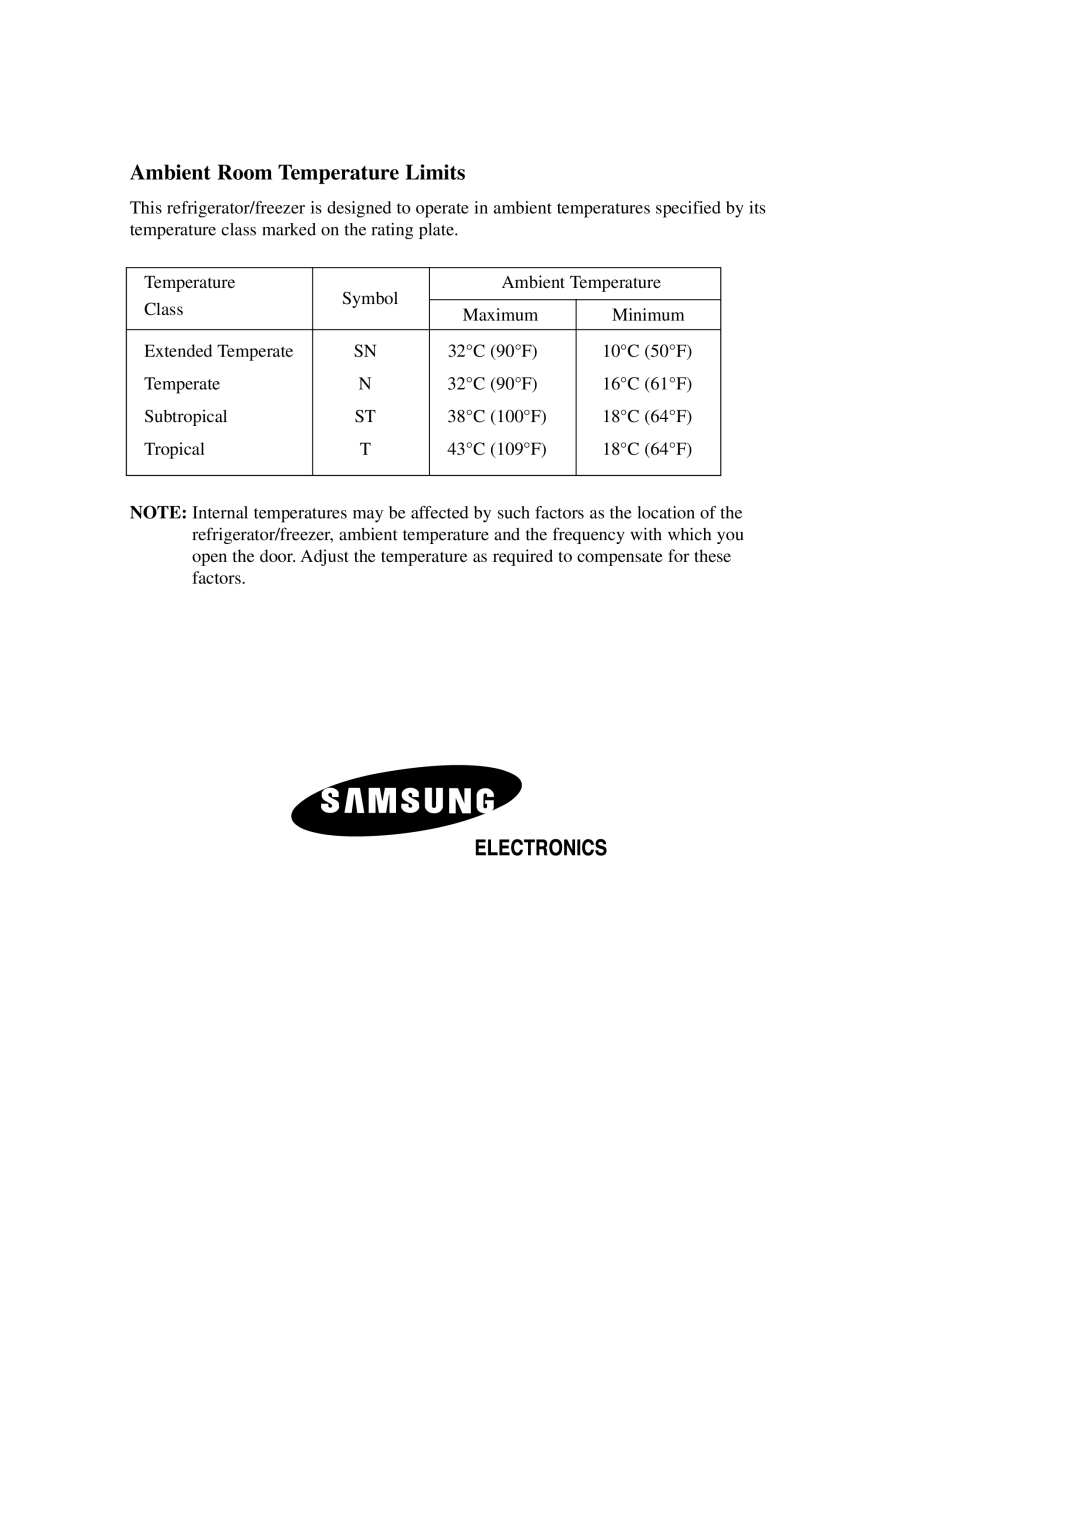 Samsung SR-L70, SR-L62, SR-L65, SR-L67 manual Ambient Room Temperature Limits 